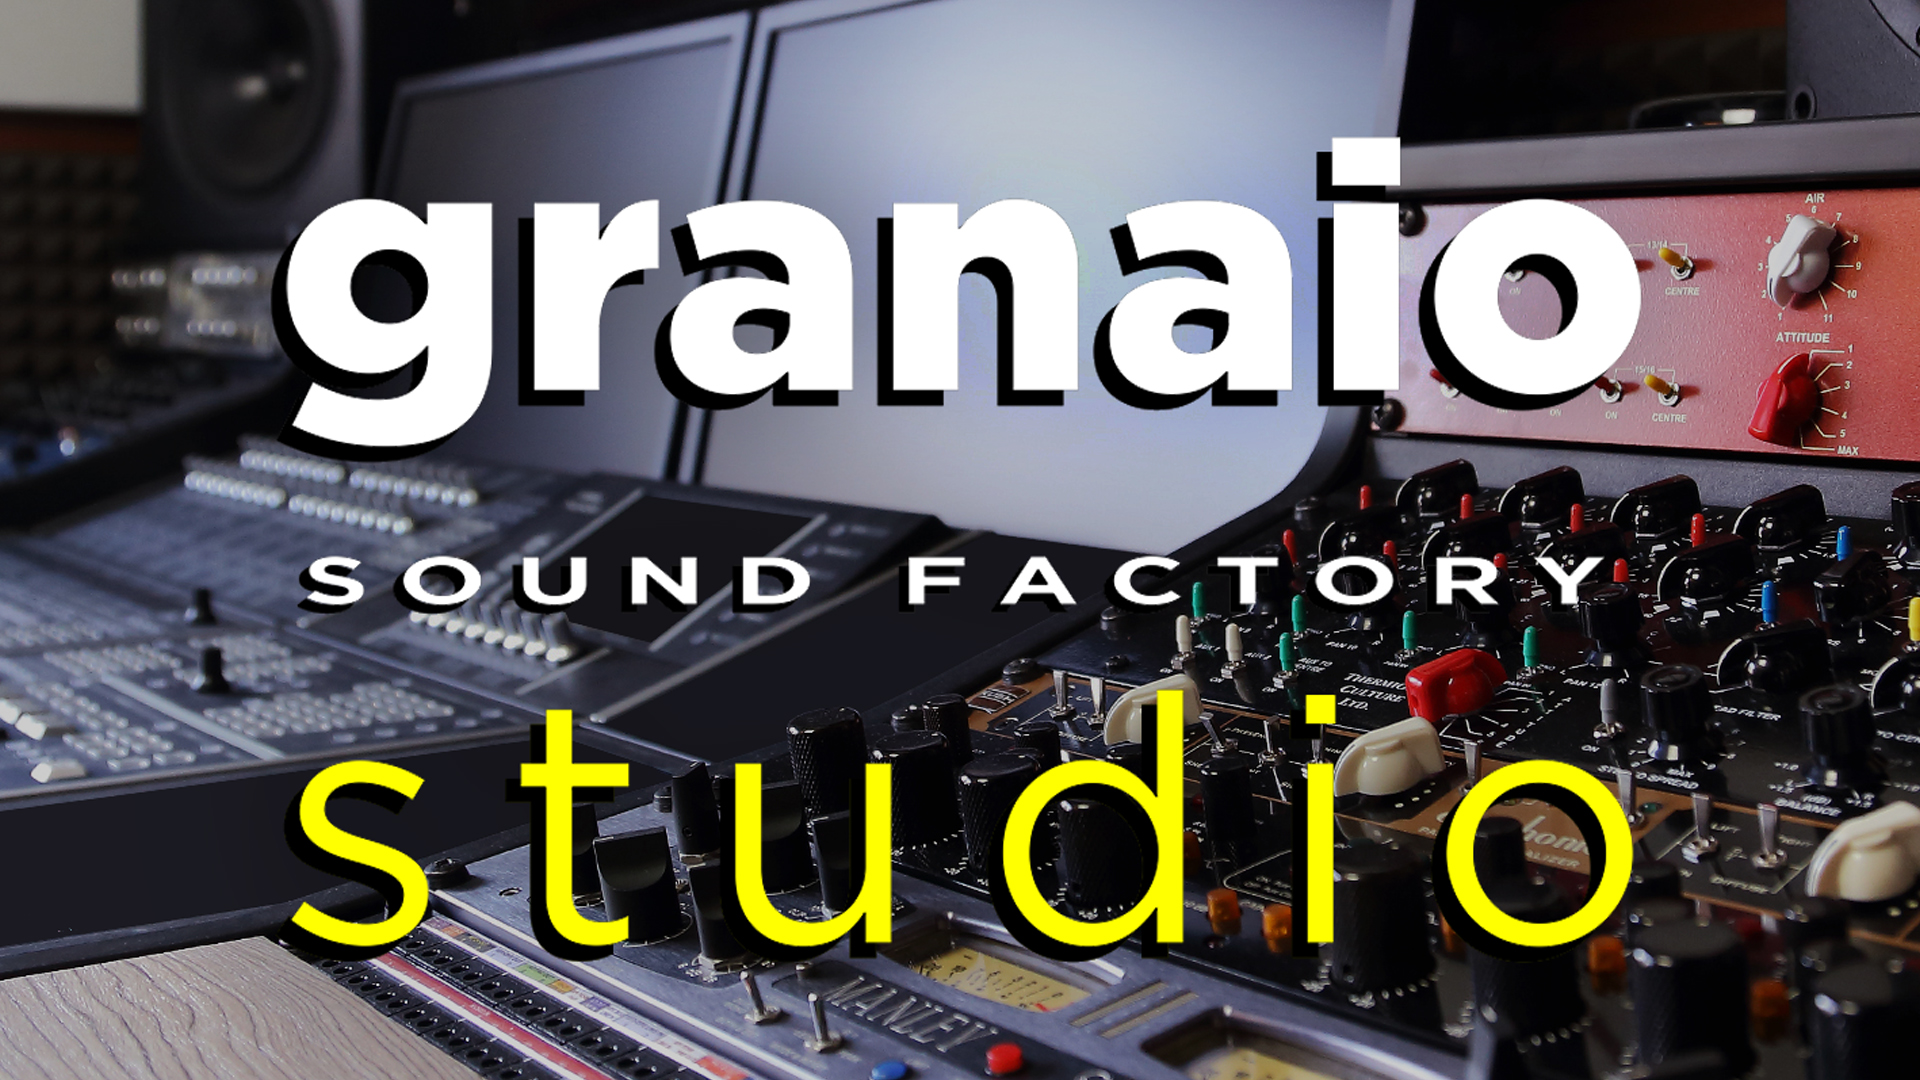 GRANAIO SOUND FACTORY STUDIO - A NEW KIND OF RECORDING STUDIO